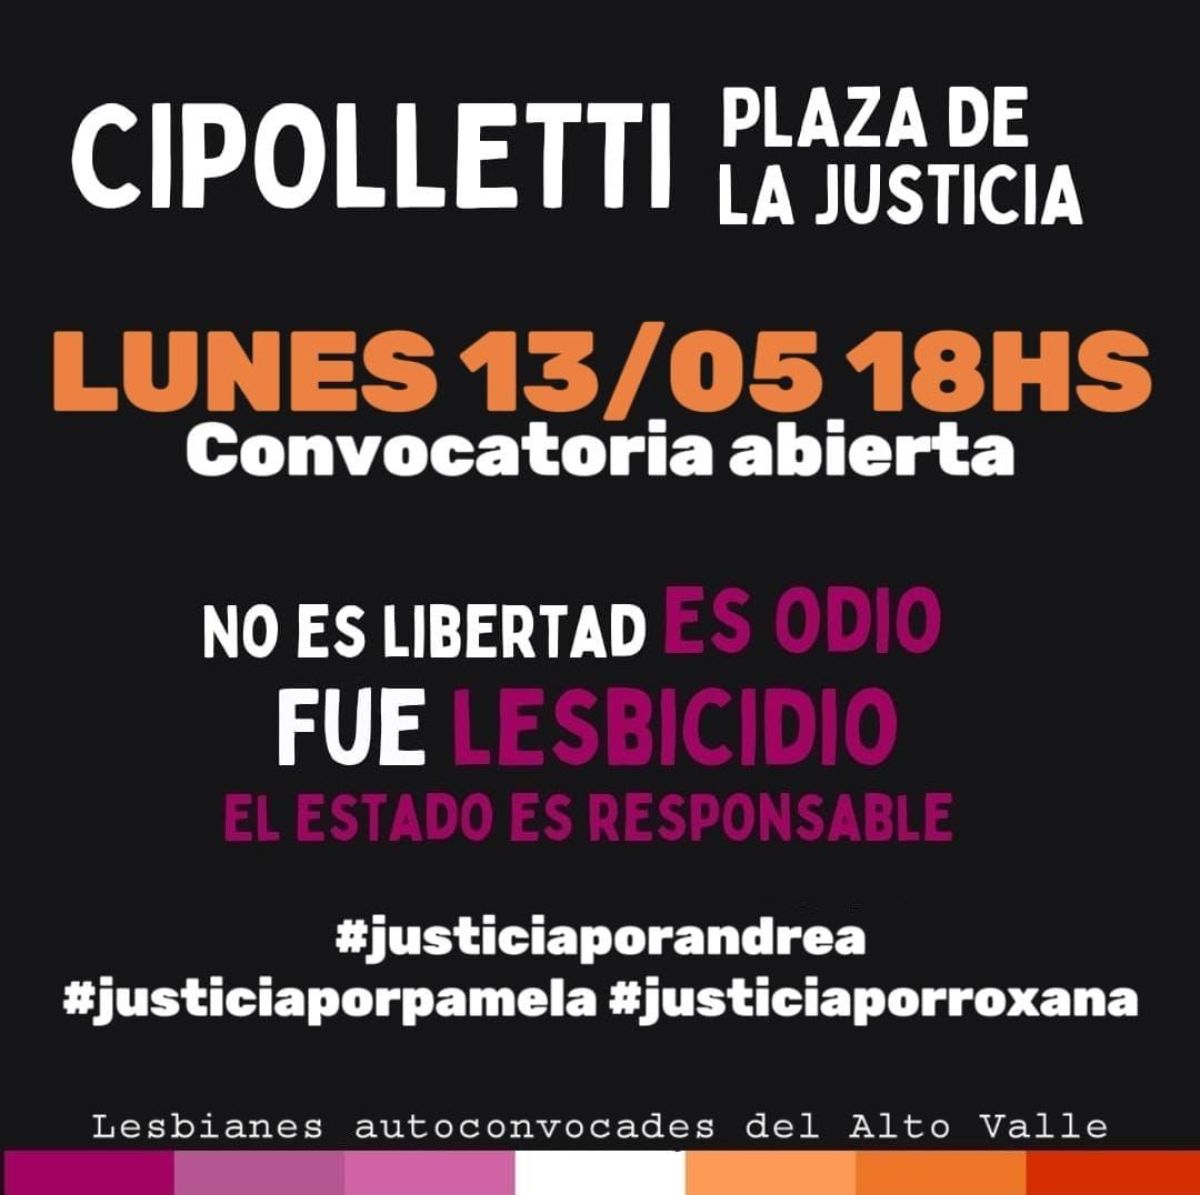 Habrá una manifestación en la ciudad por el triple lesbicidio ocurrido en la Capital Federal